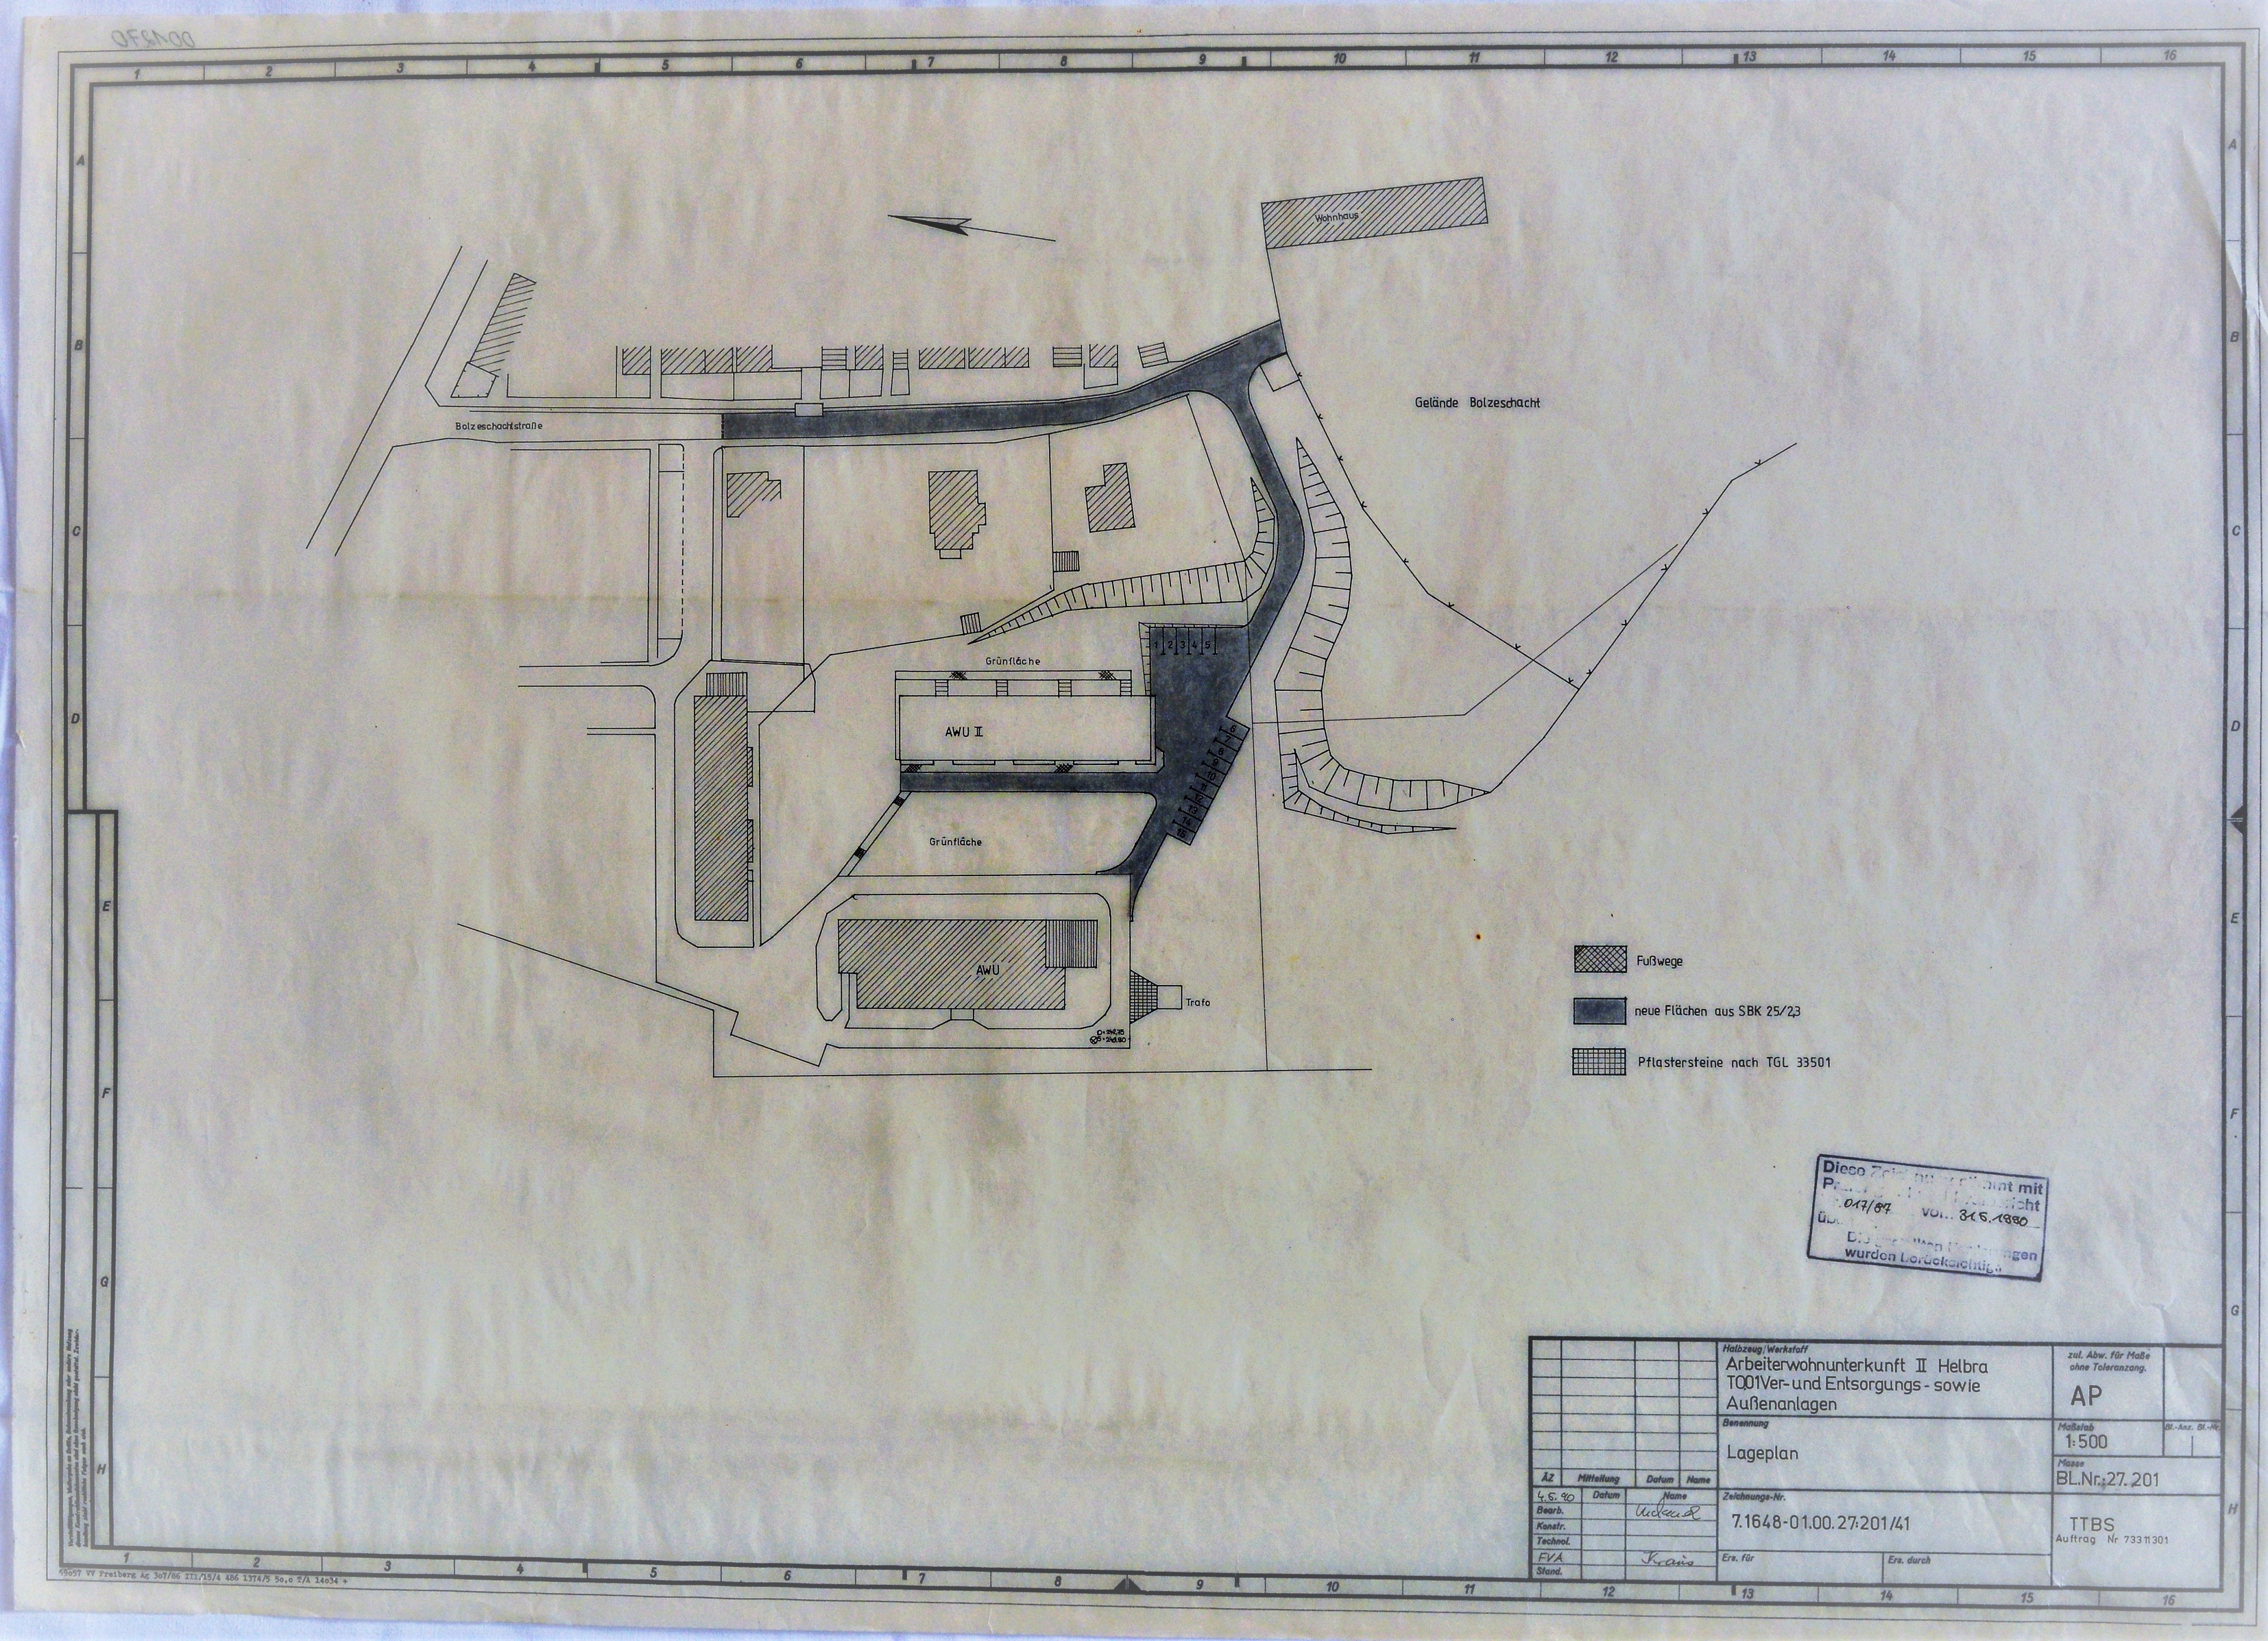 Arbeiterwohnunterkunft II Helbra TO.01 Ver- und Entsorgungs- sowie Außenanlagen (Mansfeld-Museum im Humboldt-Schloss CC BY-NC-SA)